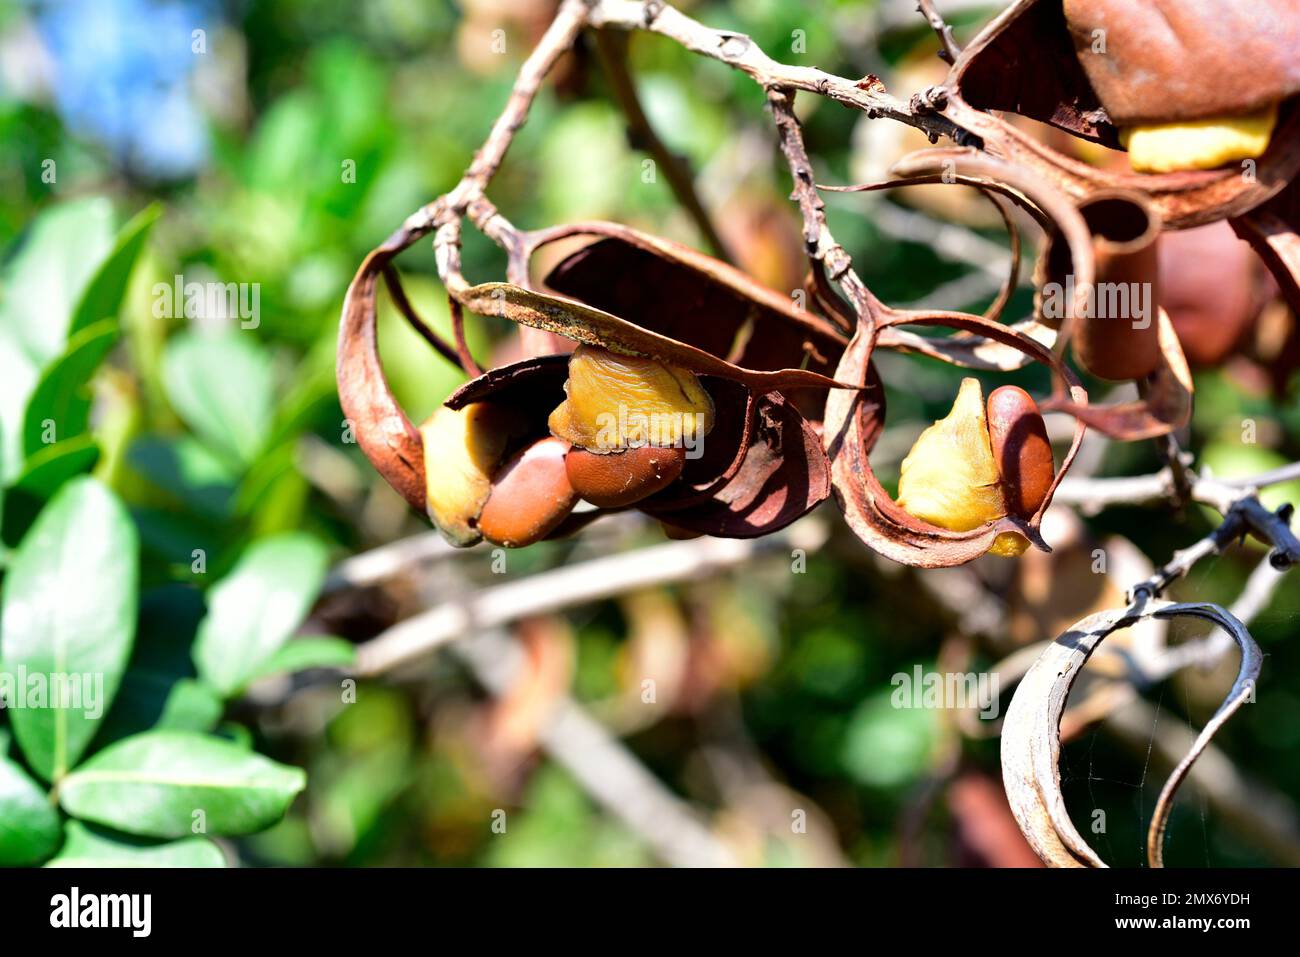 Die trauerbohne (Schotia brachypetala oder Schotia latifolia) ist ein im südlichen Afrika einheimischer Laubbaum. Details zu Samen und Früchten. Stockfoto